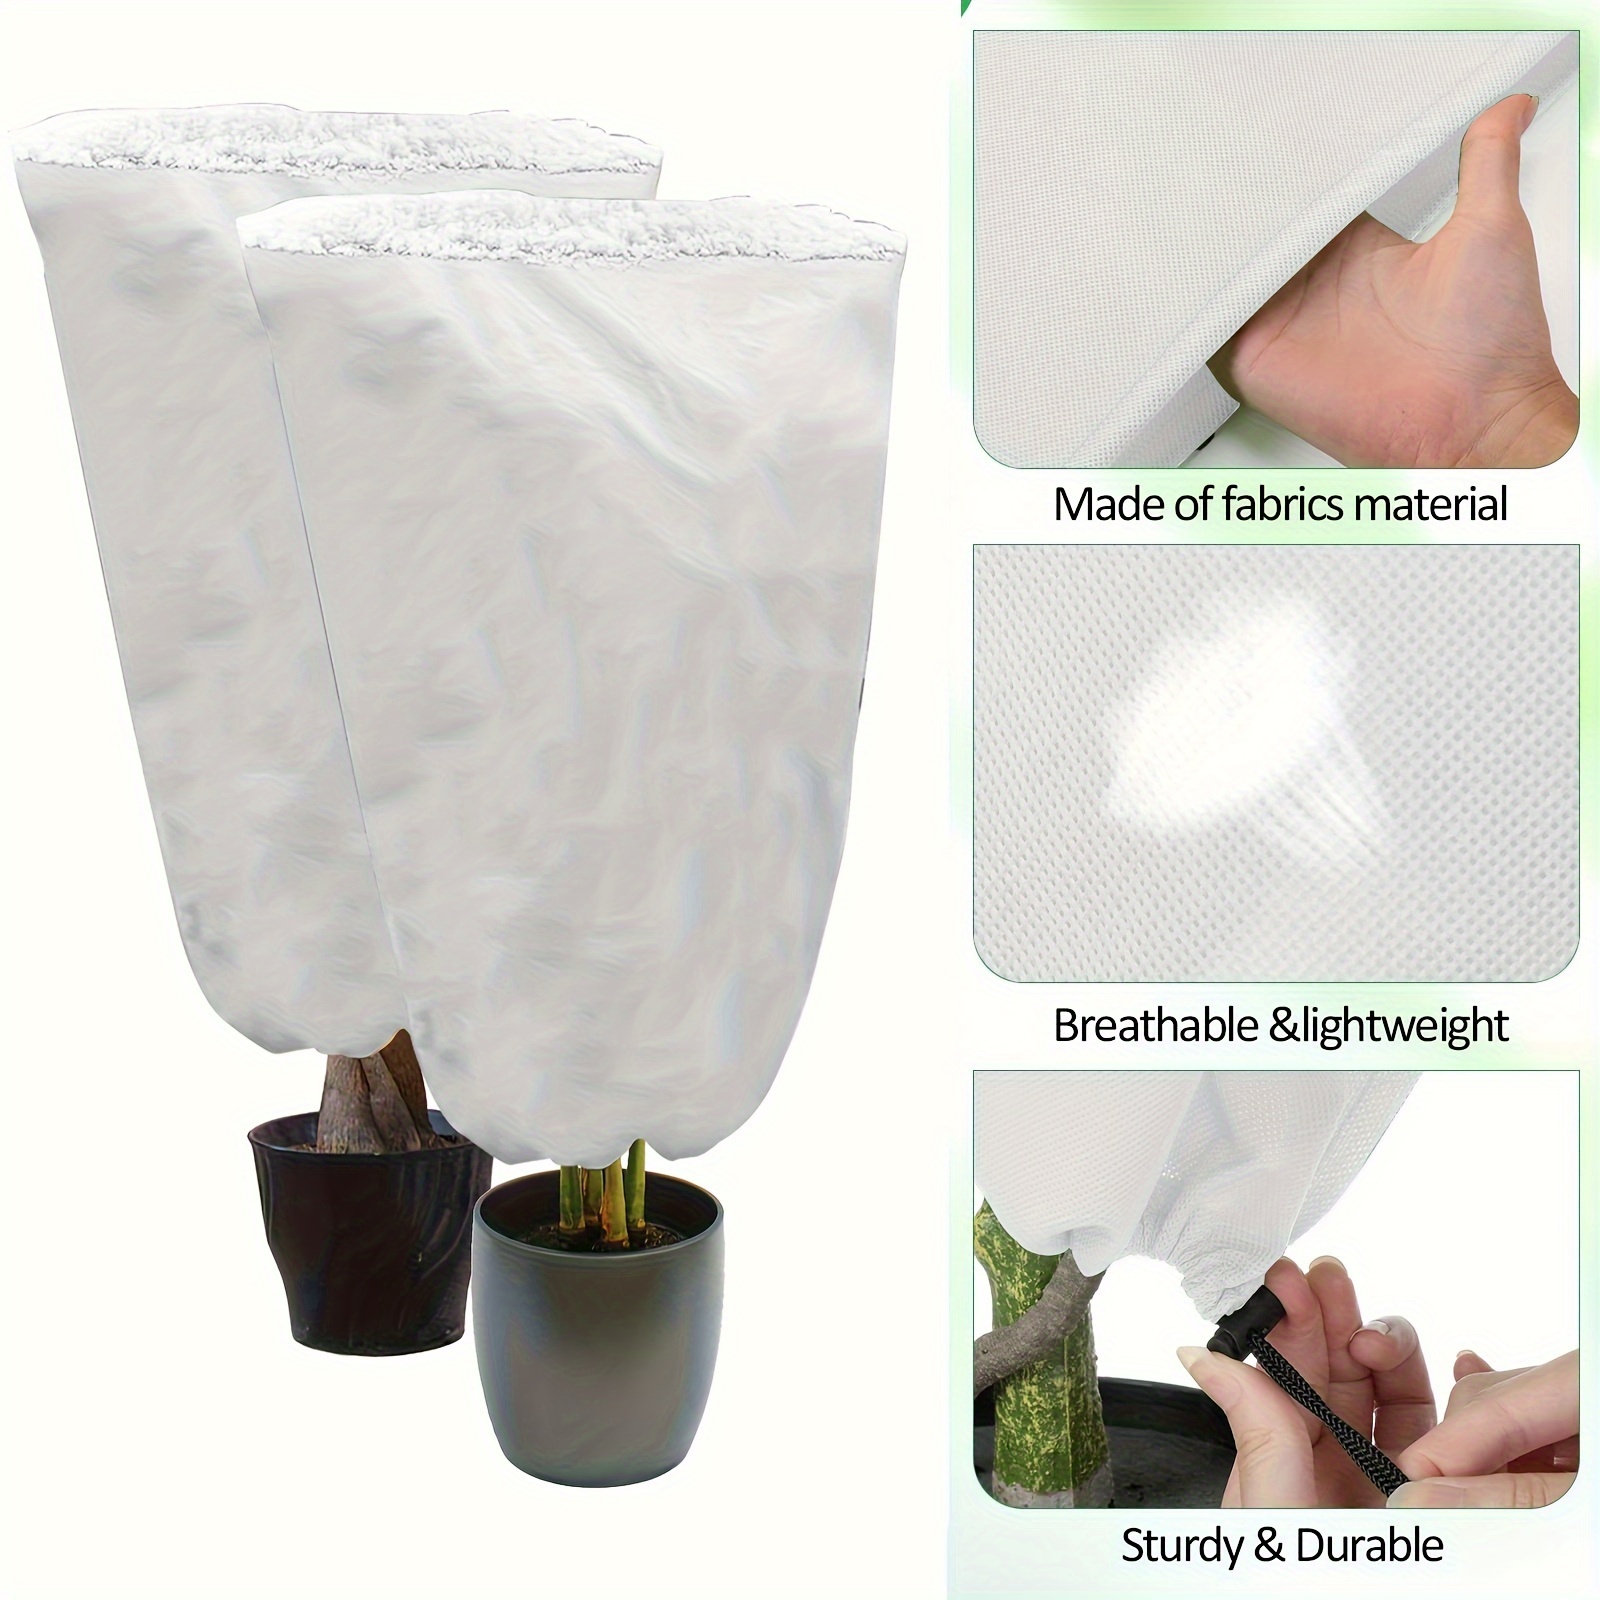 1 Pack, Couverture Anti-gel Et Anti-froid Épaissie Pour Plantes, Sac De  Protection Pour Arbres